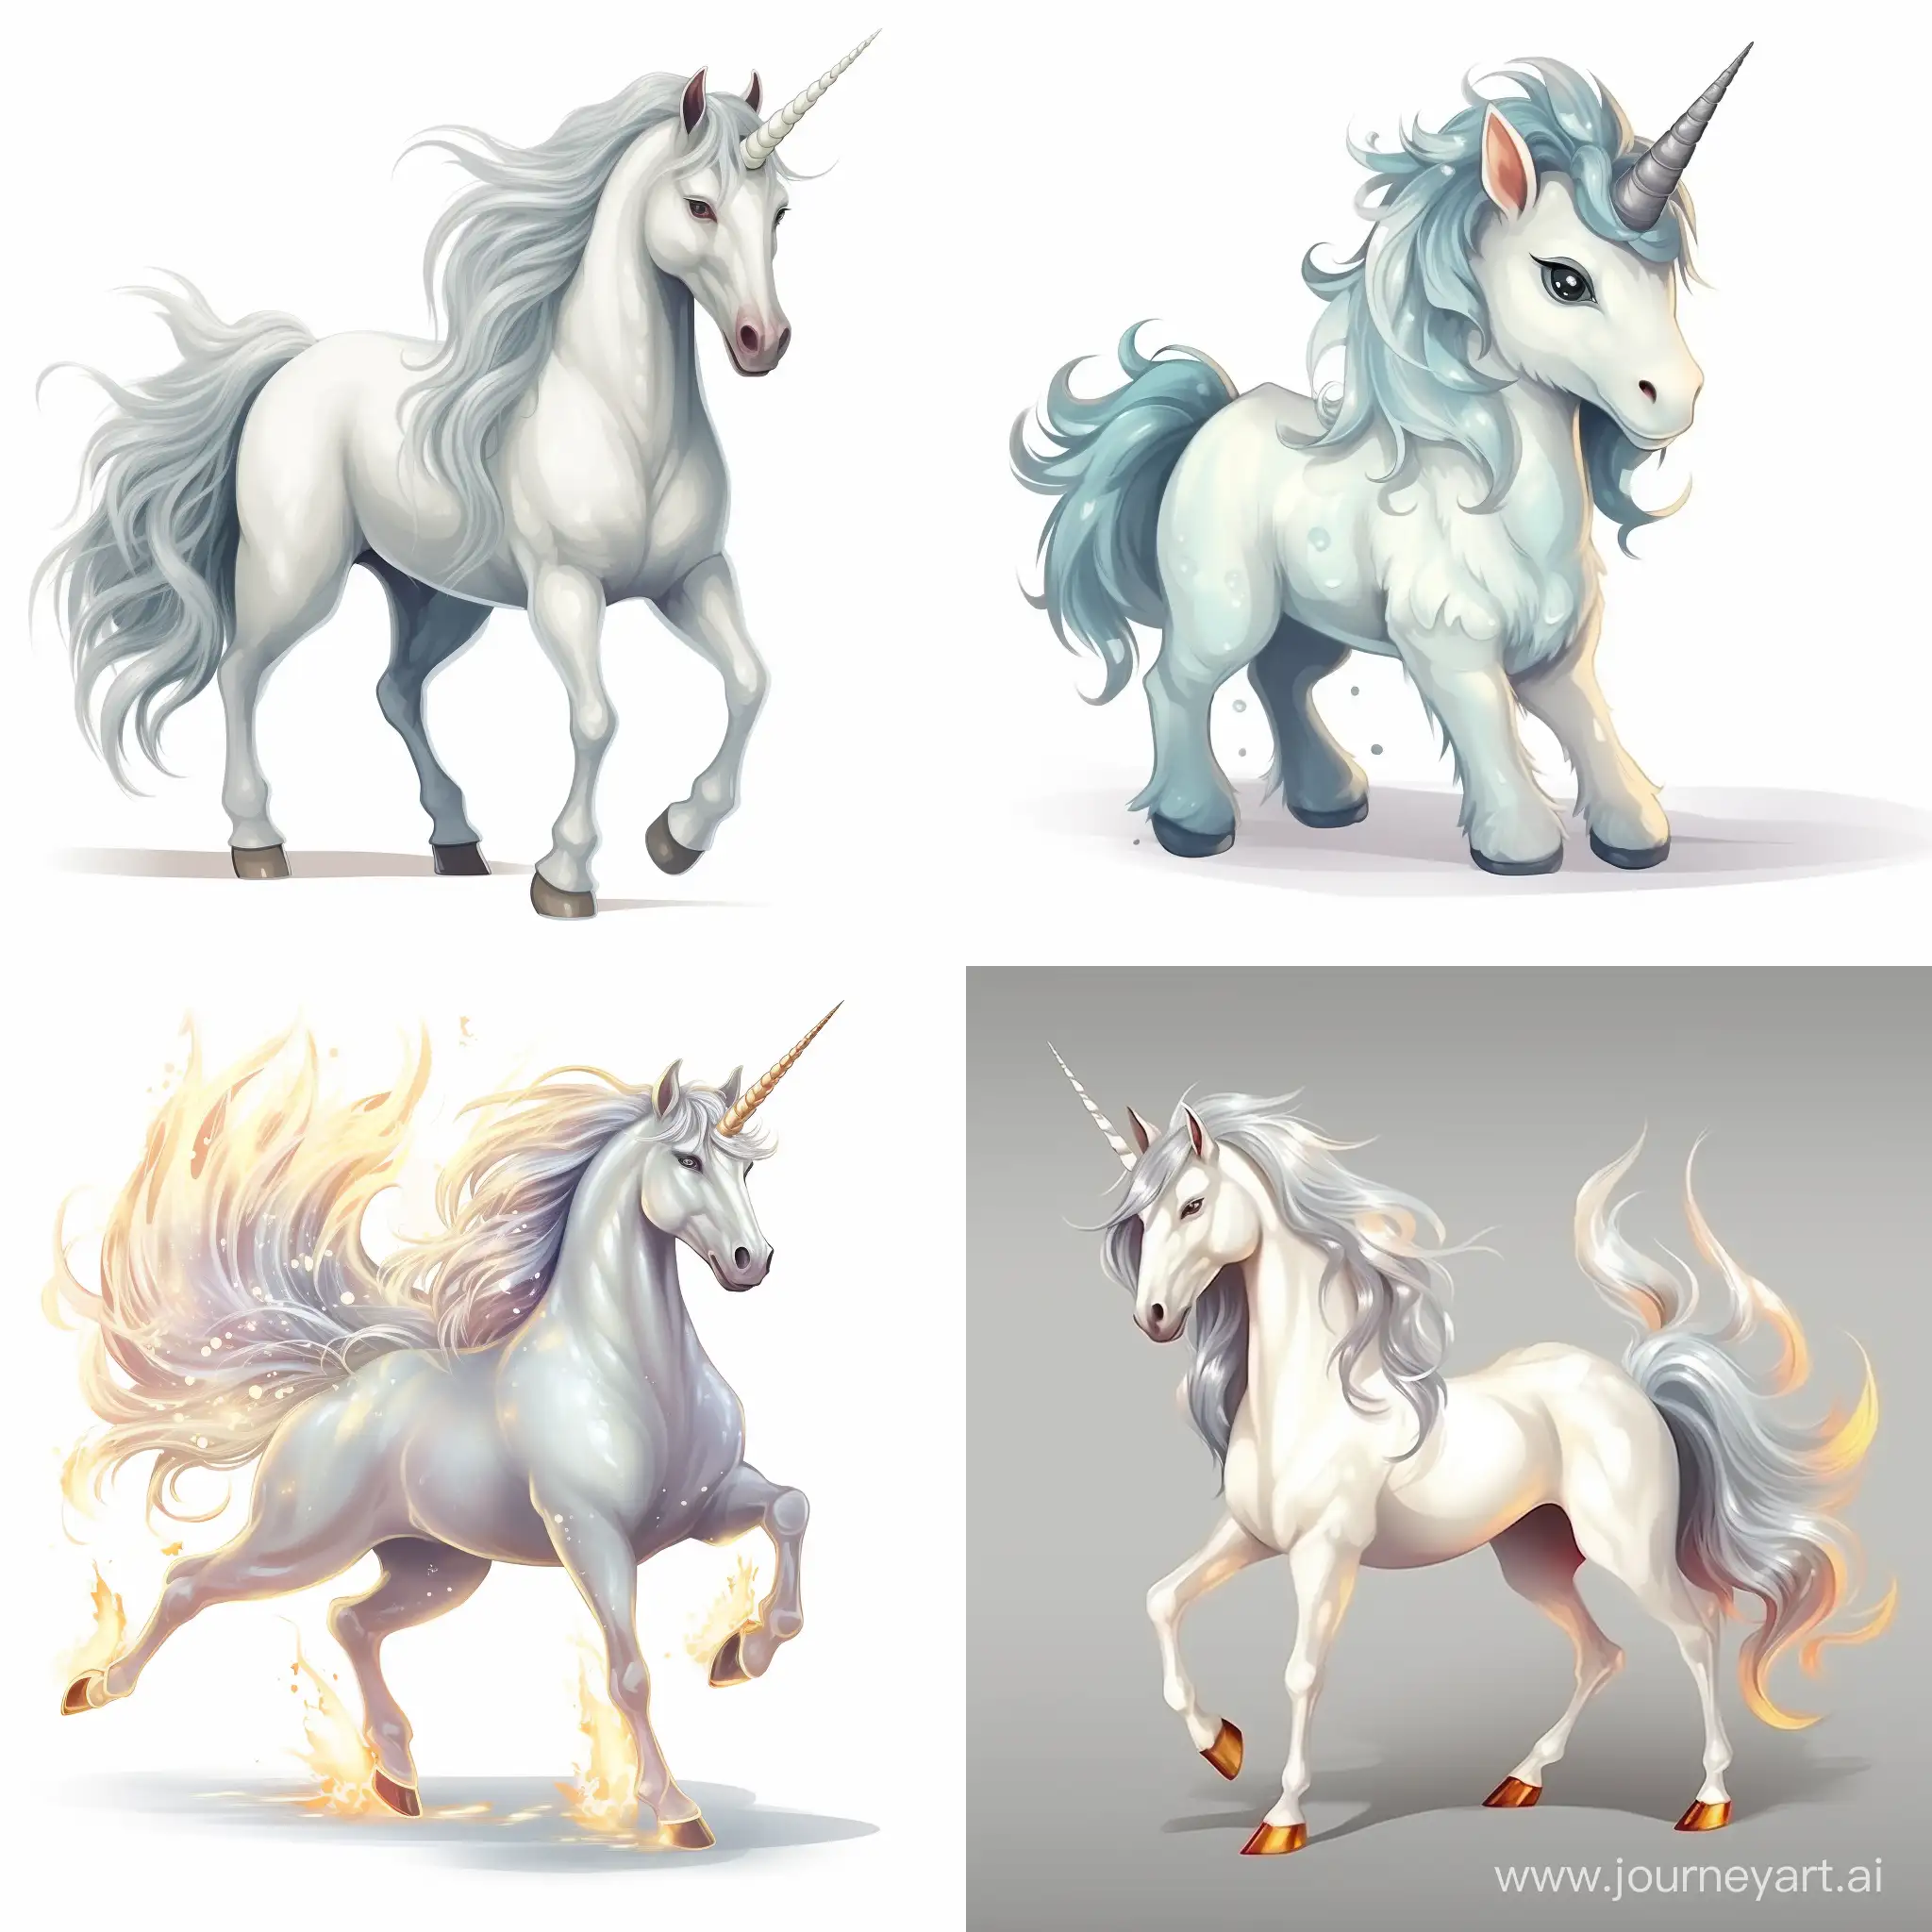 Magic unicorn white, on white background, cartoon style, illustration 